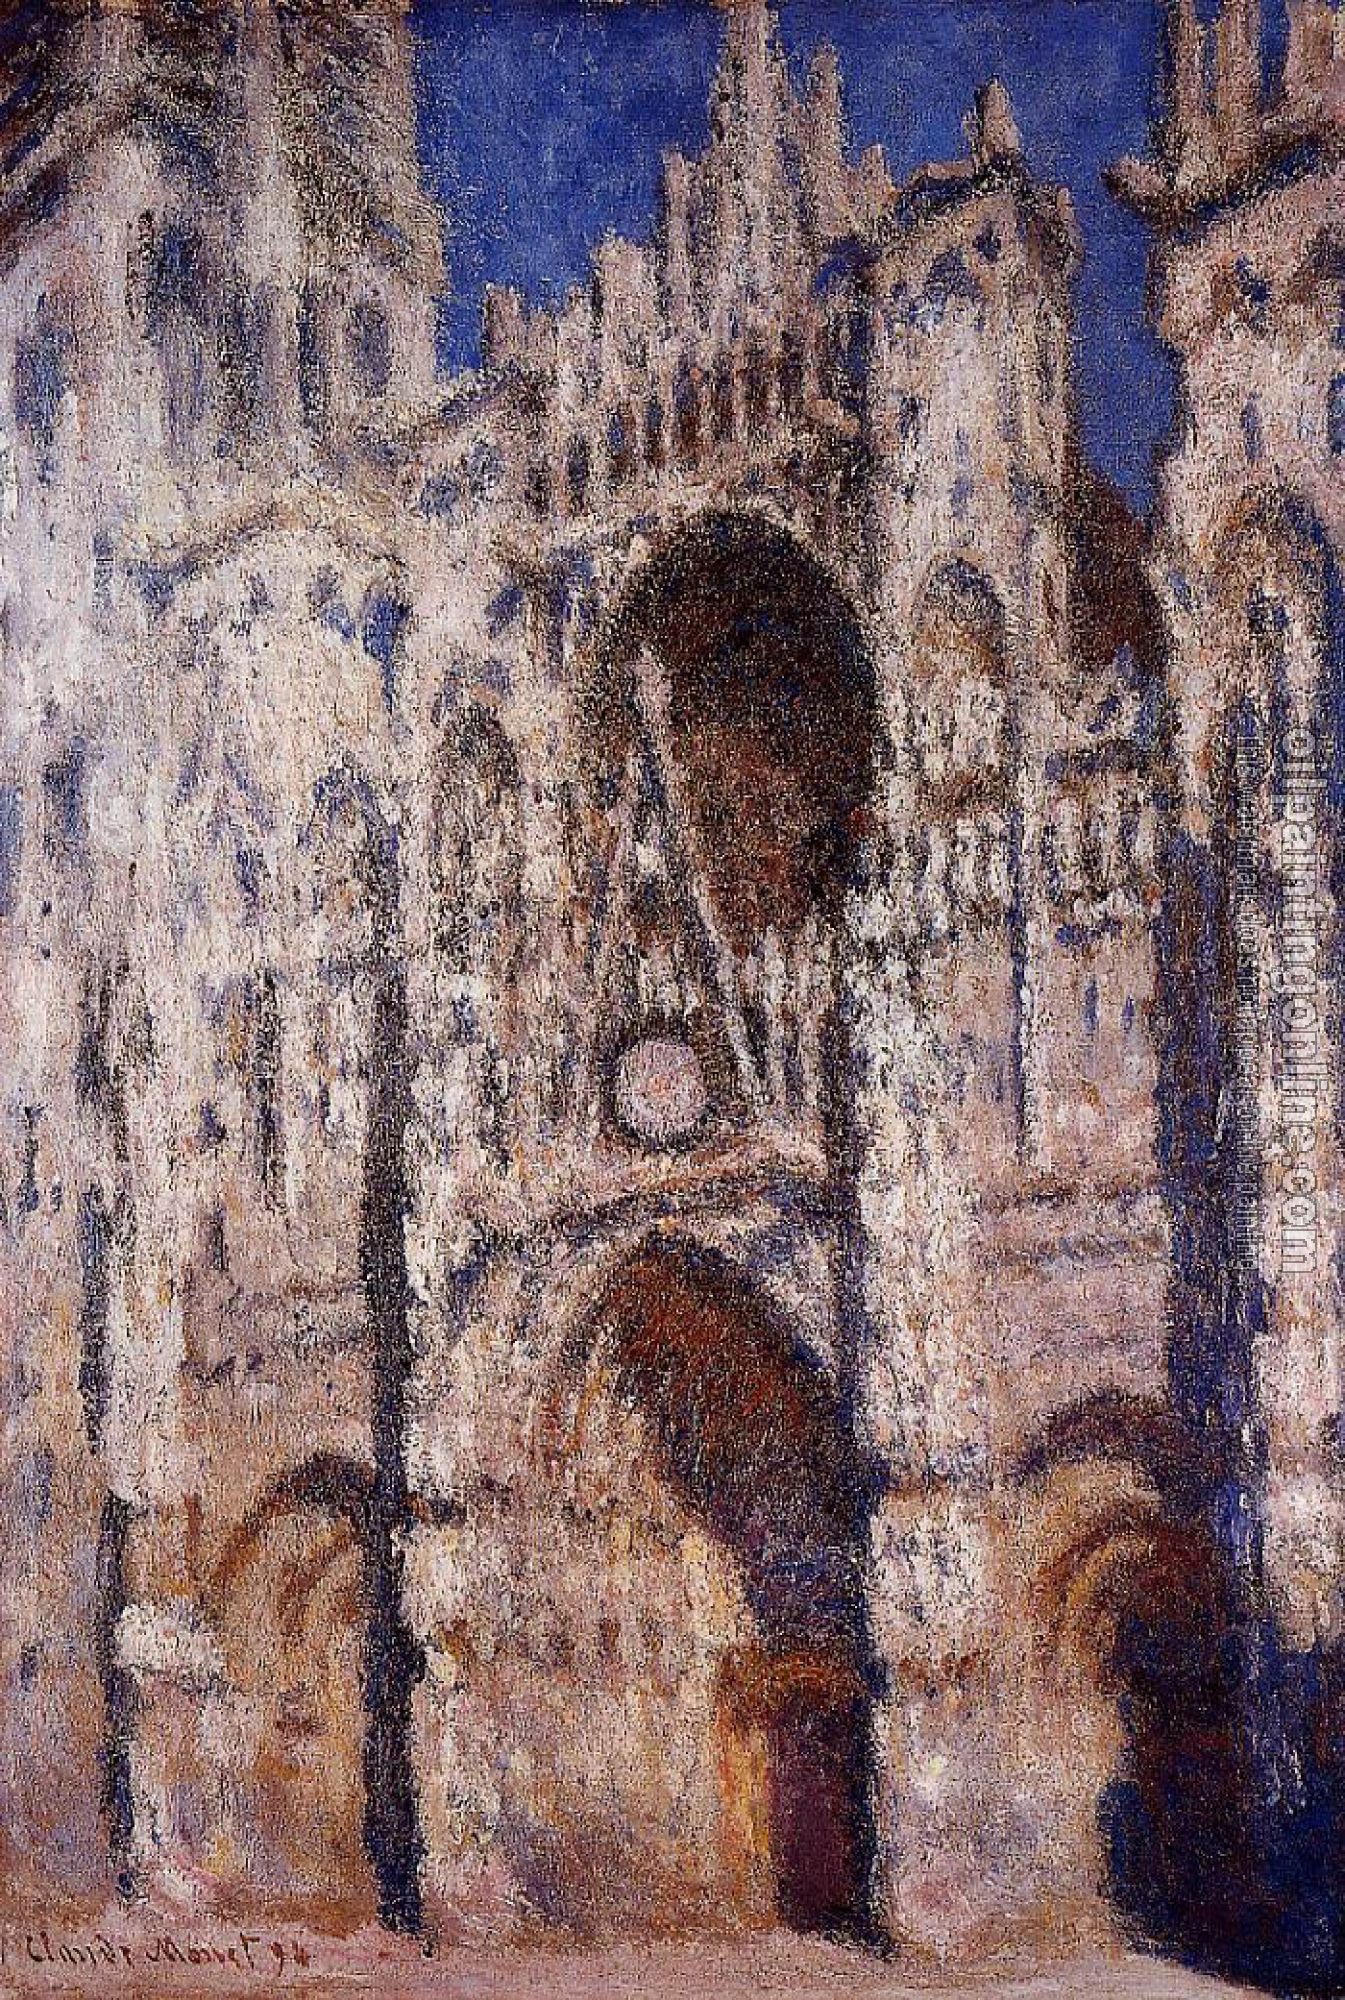 Monet, Claude Oscar - Rouen Cathedral